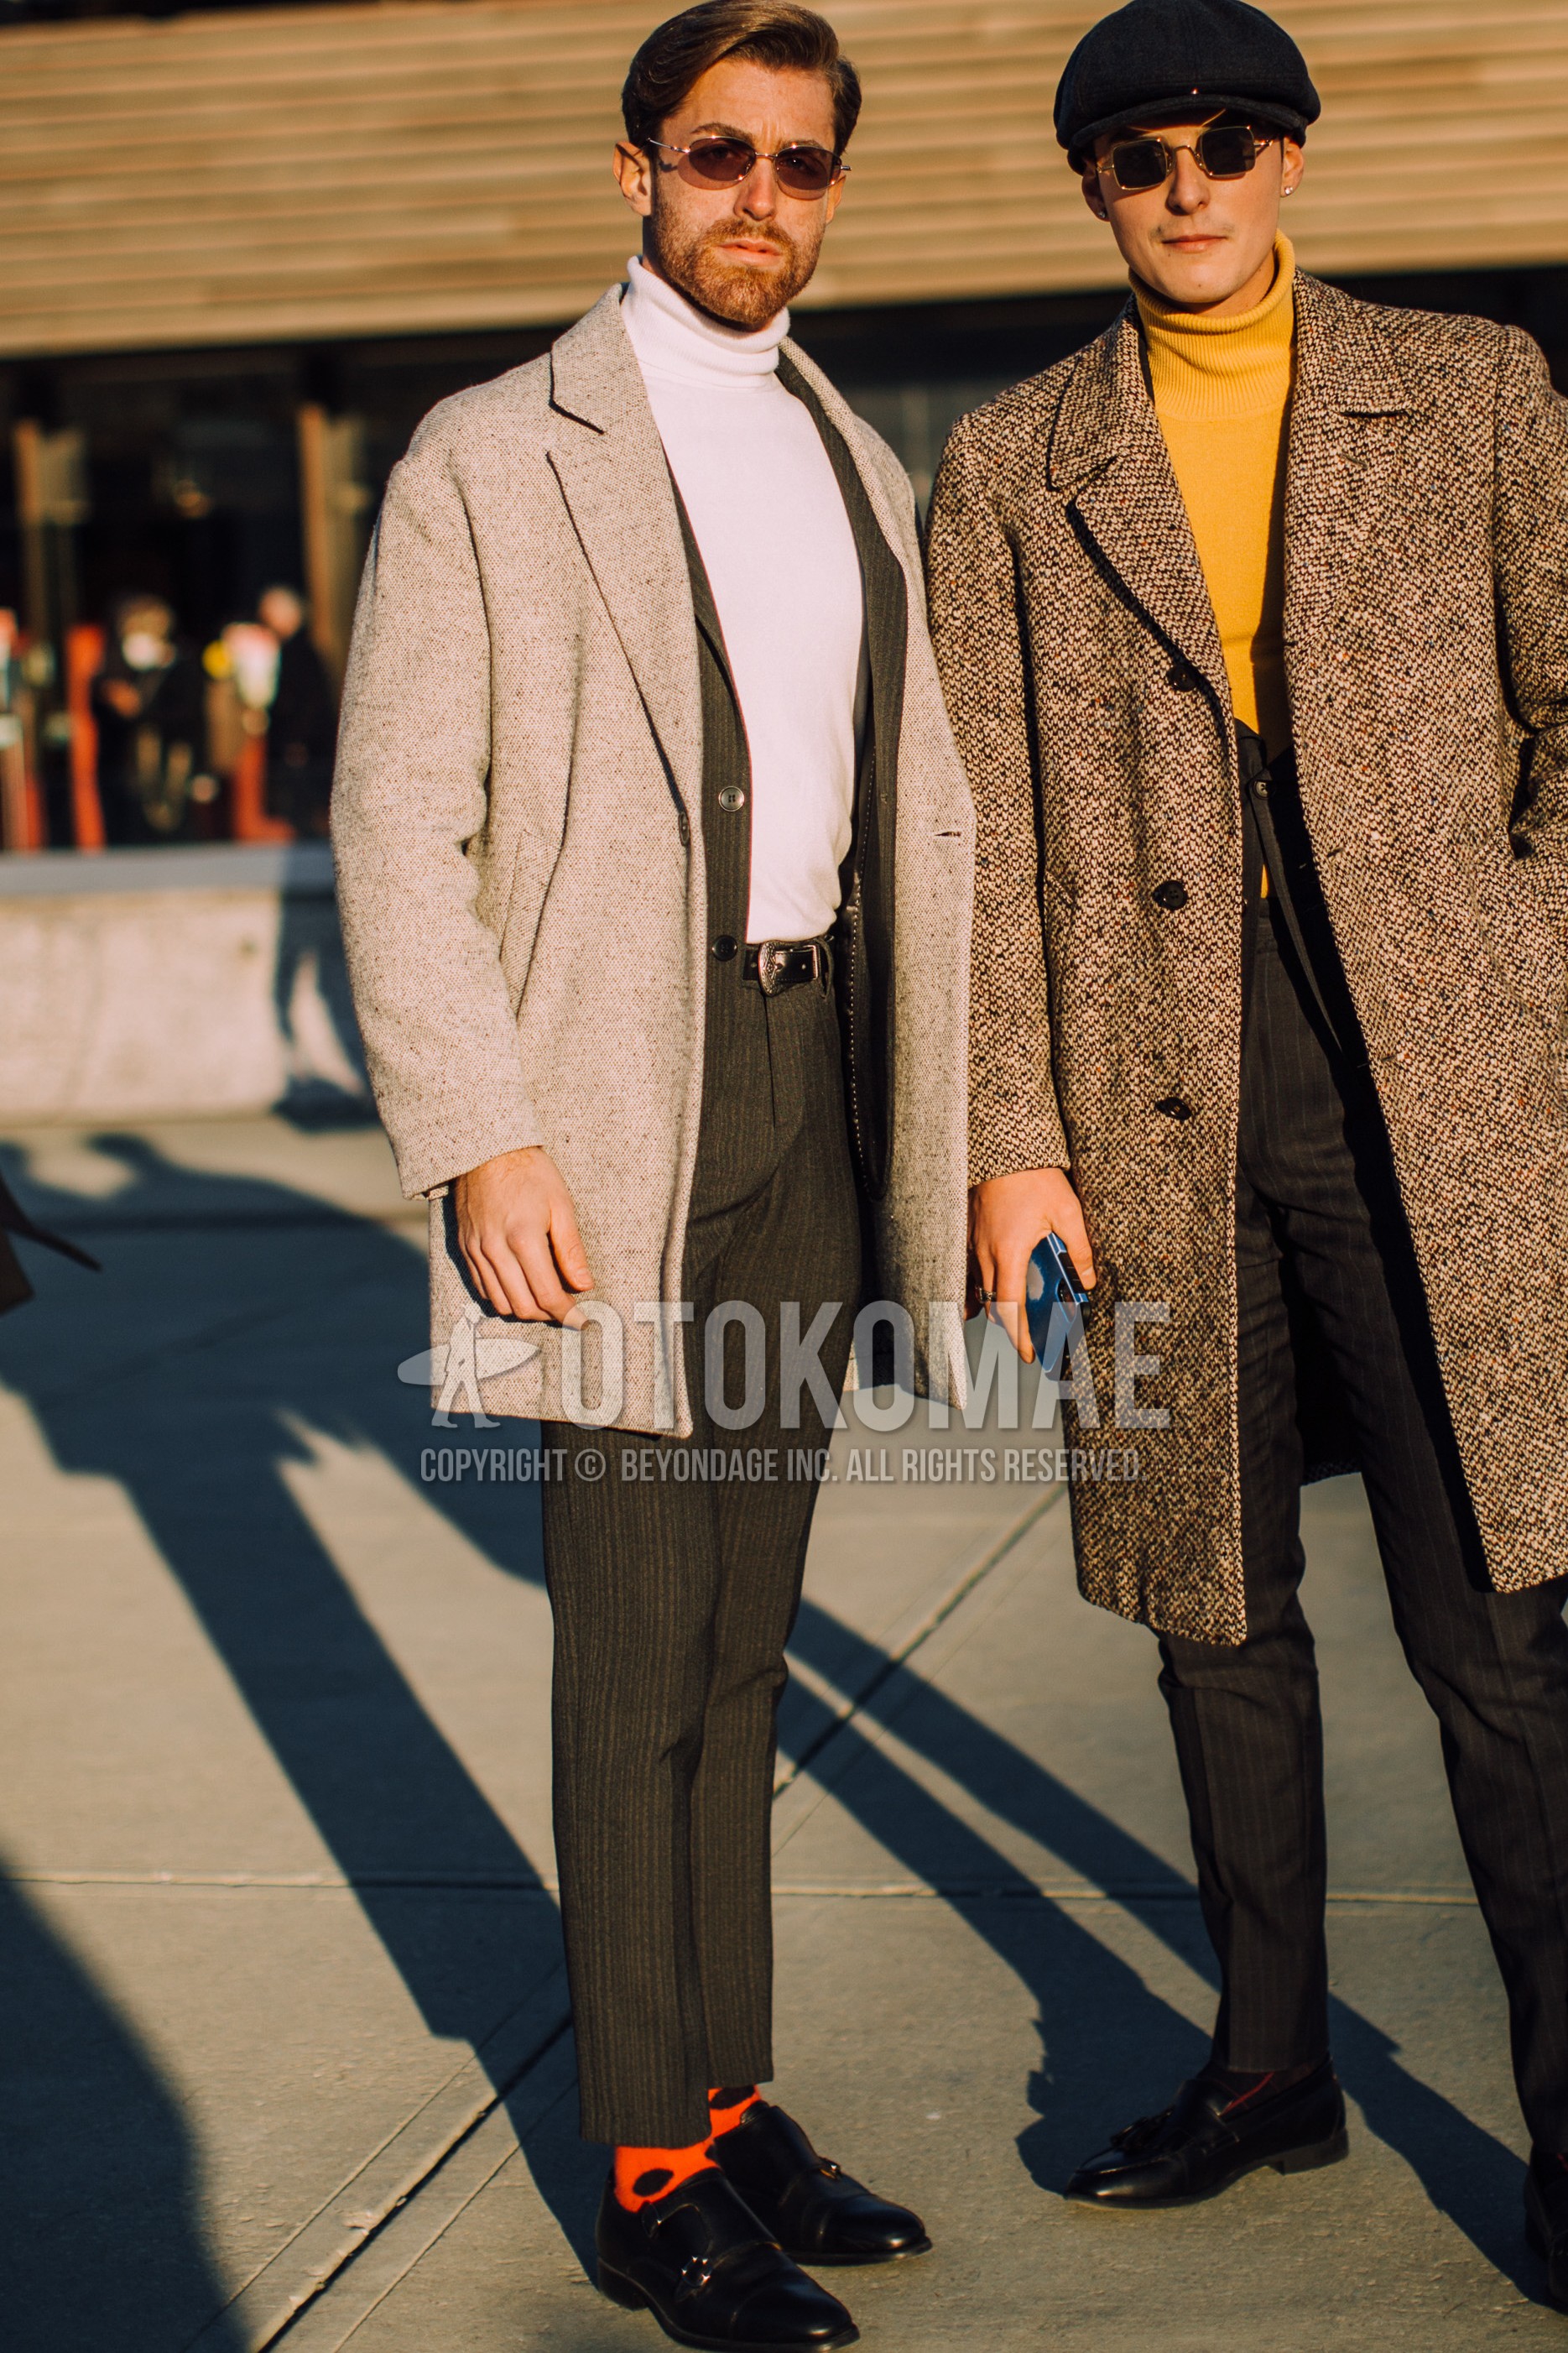 Men's autumn winter outfit with silver plain sunglasses, gray plain chester coat, white plain turtleneck knit, black plain leather belt, orange dots socks, black monk shoes leather shoes, dark gray stripes suit.